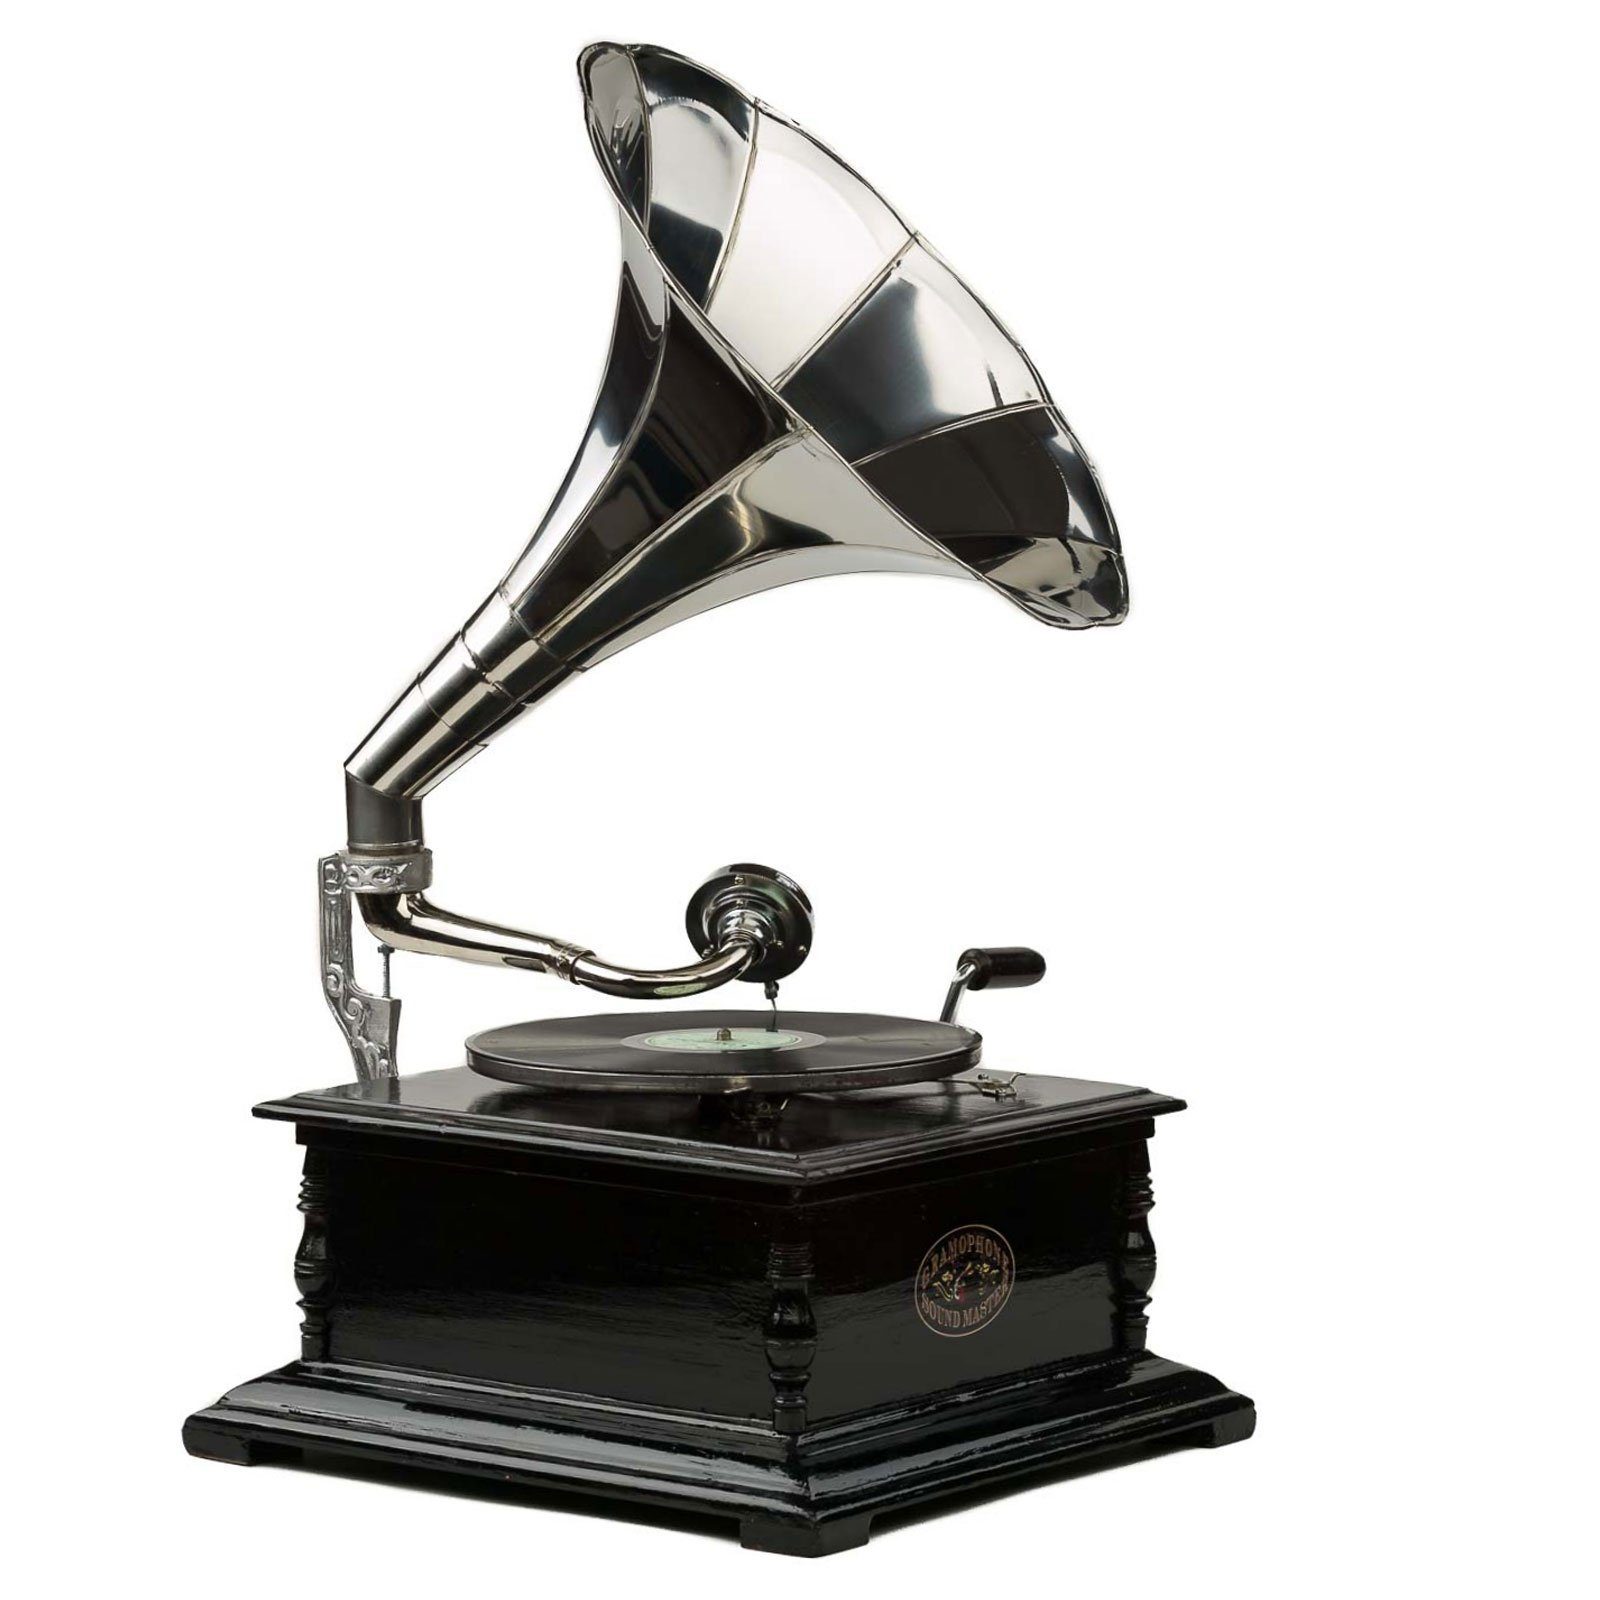 Nostalgie Grammophon Gramophone Schellack Trichter Grammofon antik-Stil rund 